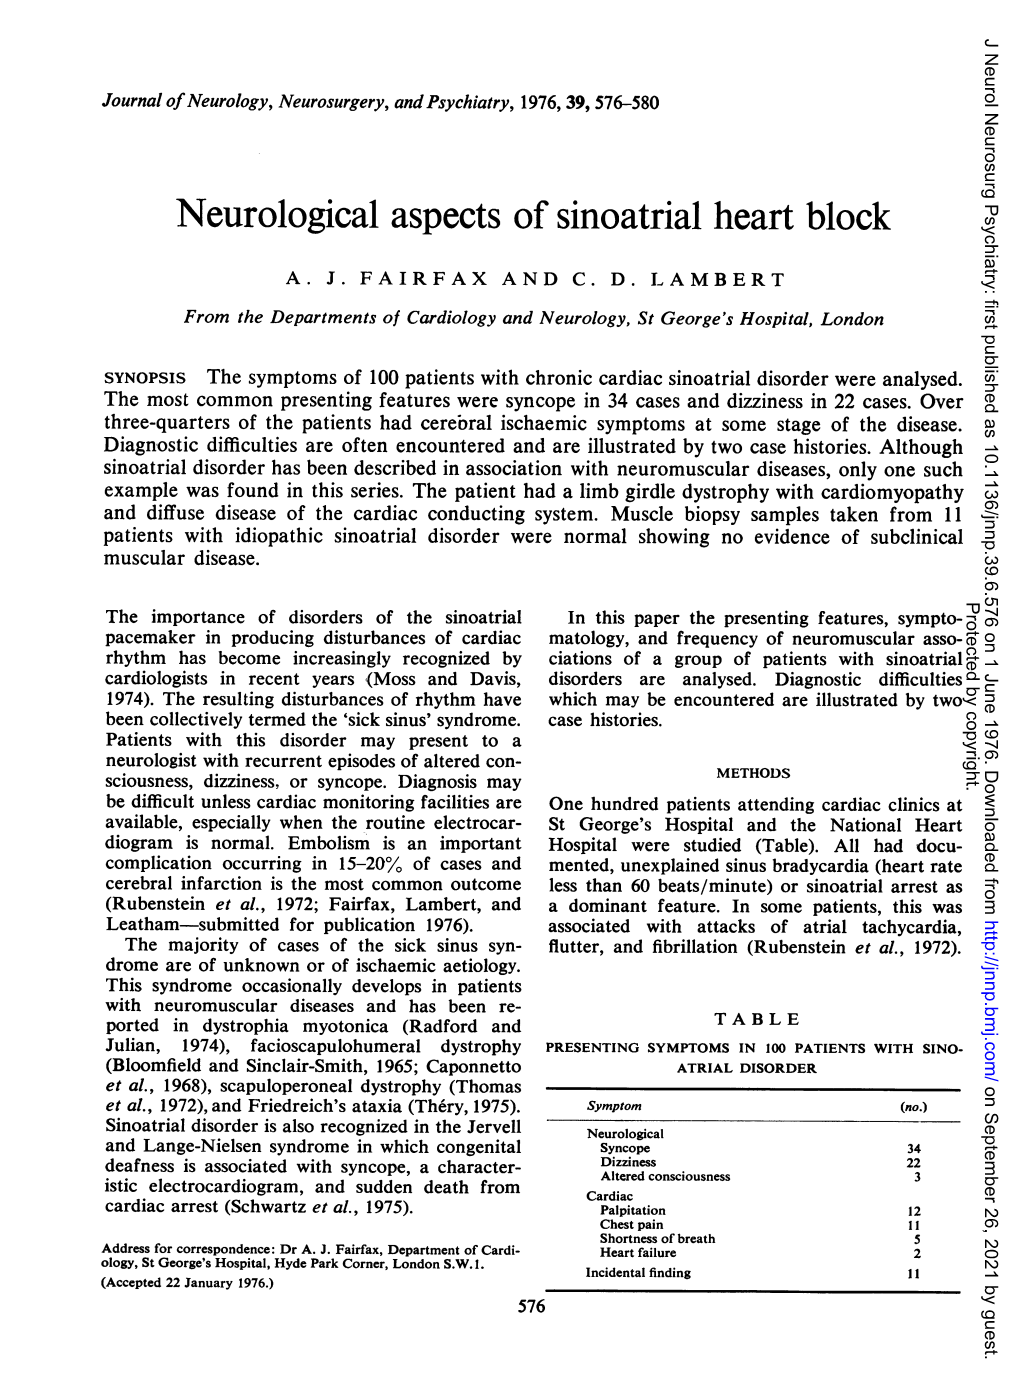 Neurological Aspects of Sinoatrial Heart Block